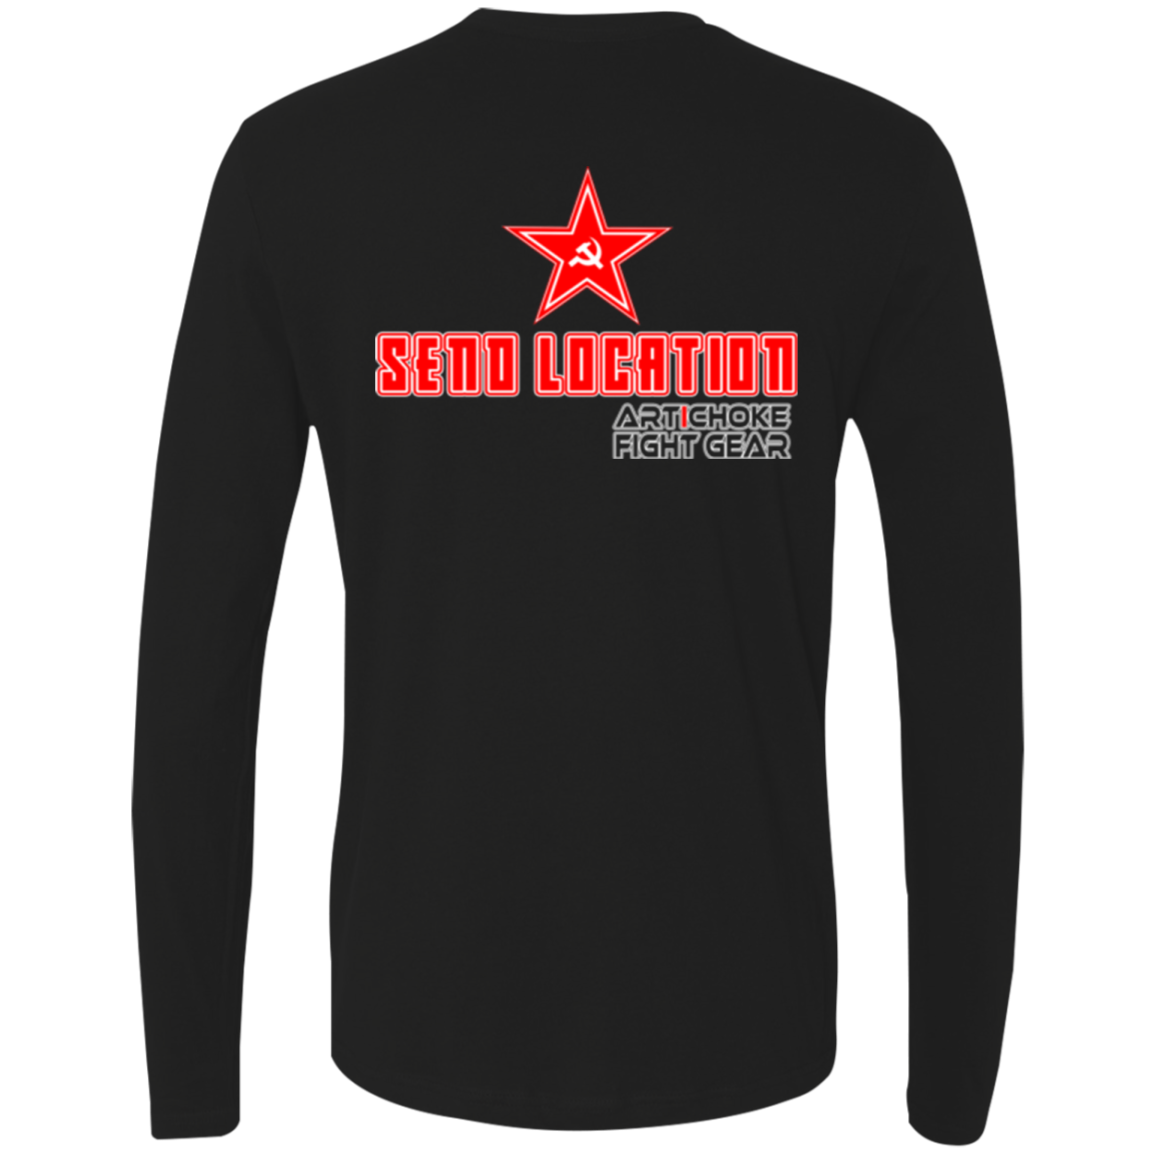 Artichoke Fight Gear Custom Design #18. Send Location. Khabib Nurmagomedov. Fan Art. Men's 100% combed ring-spun cotton long sleeve